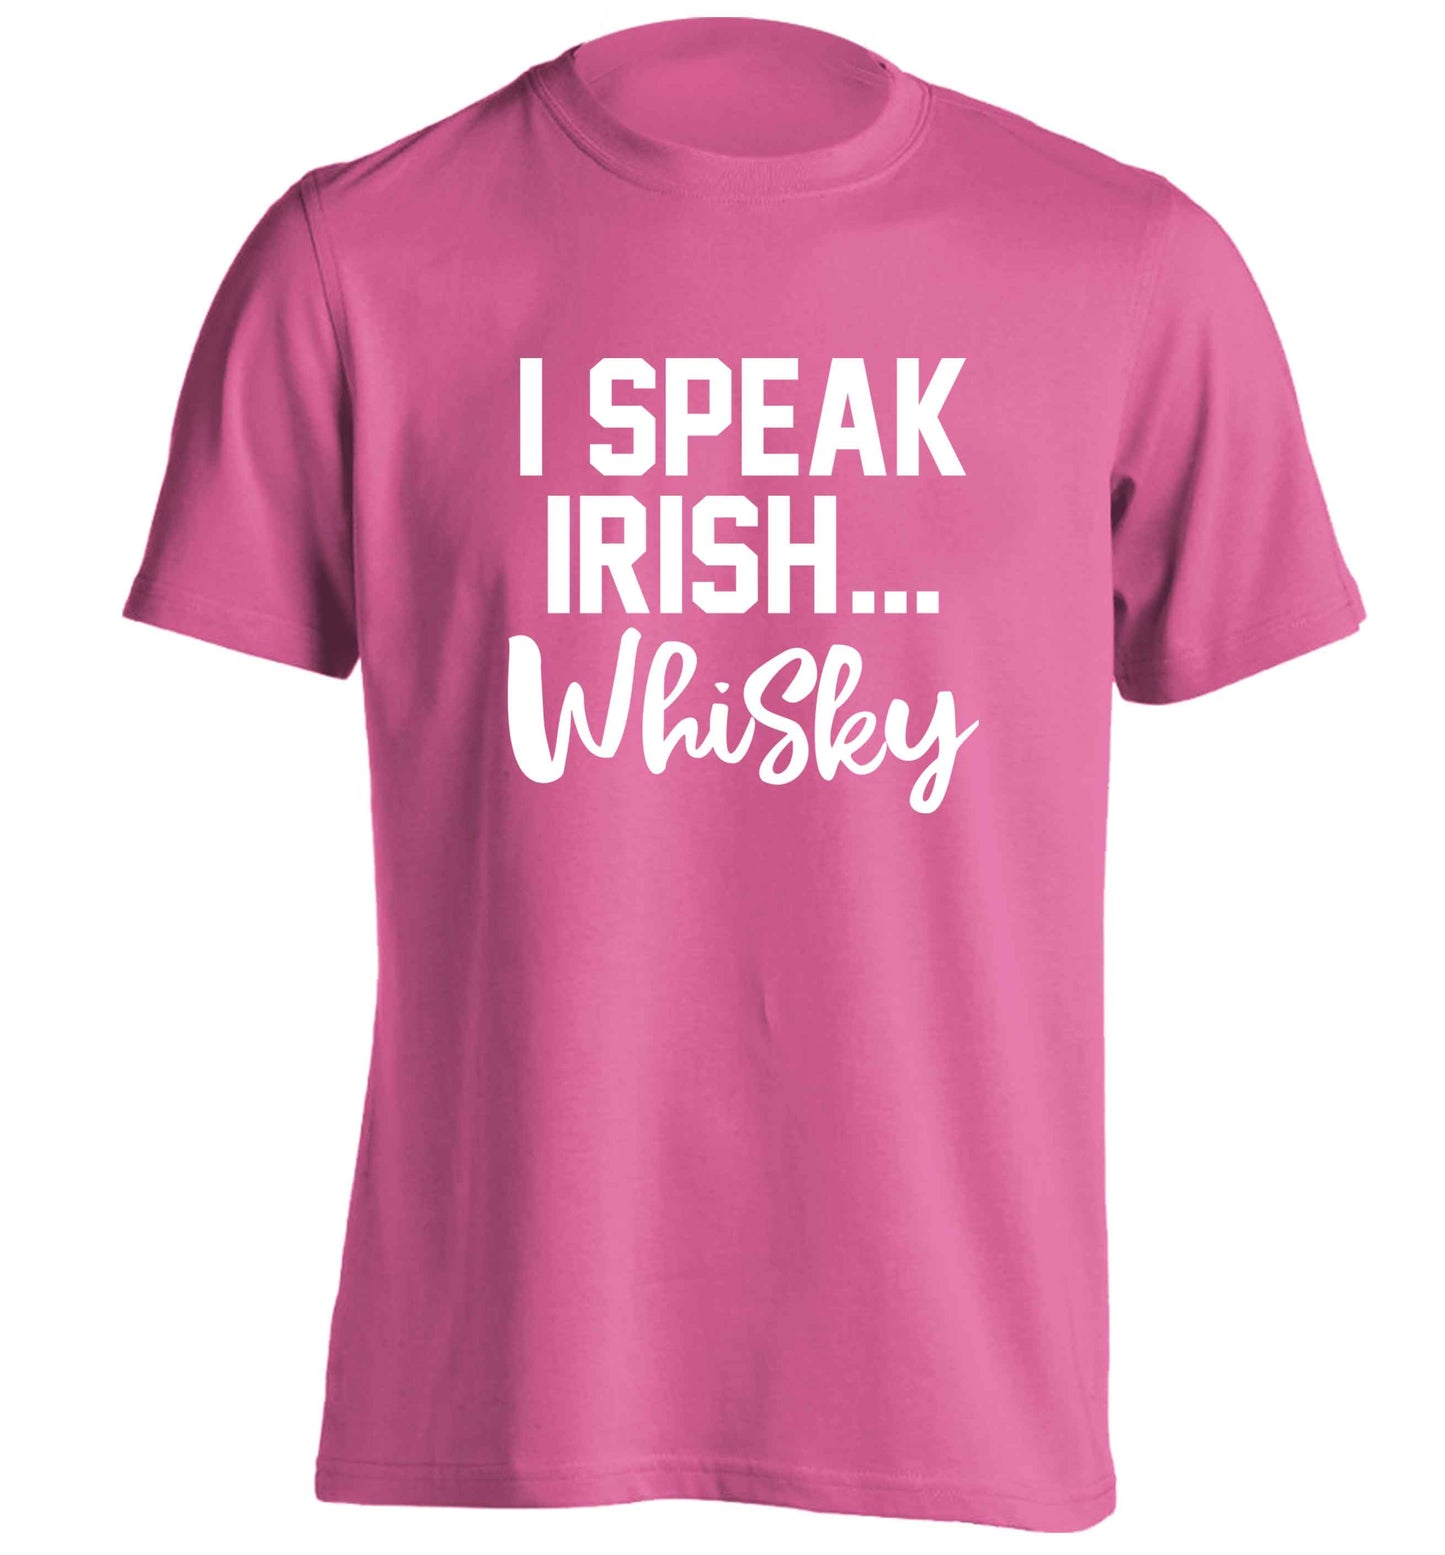 I speak Irish whisky adults unisex pink Tshirt 2XL